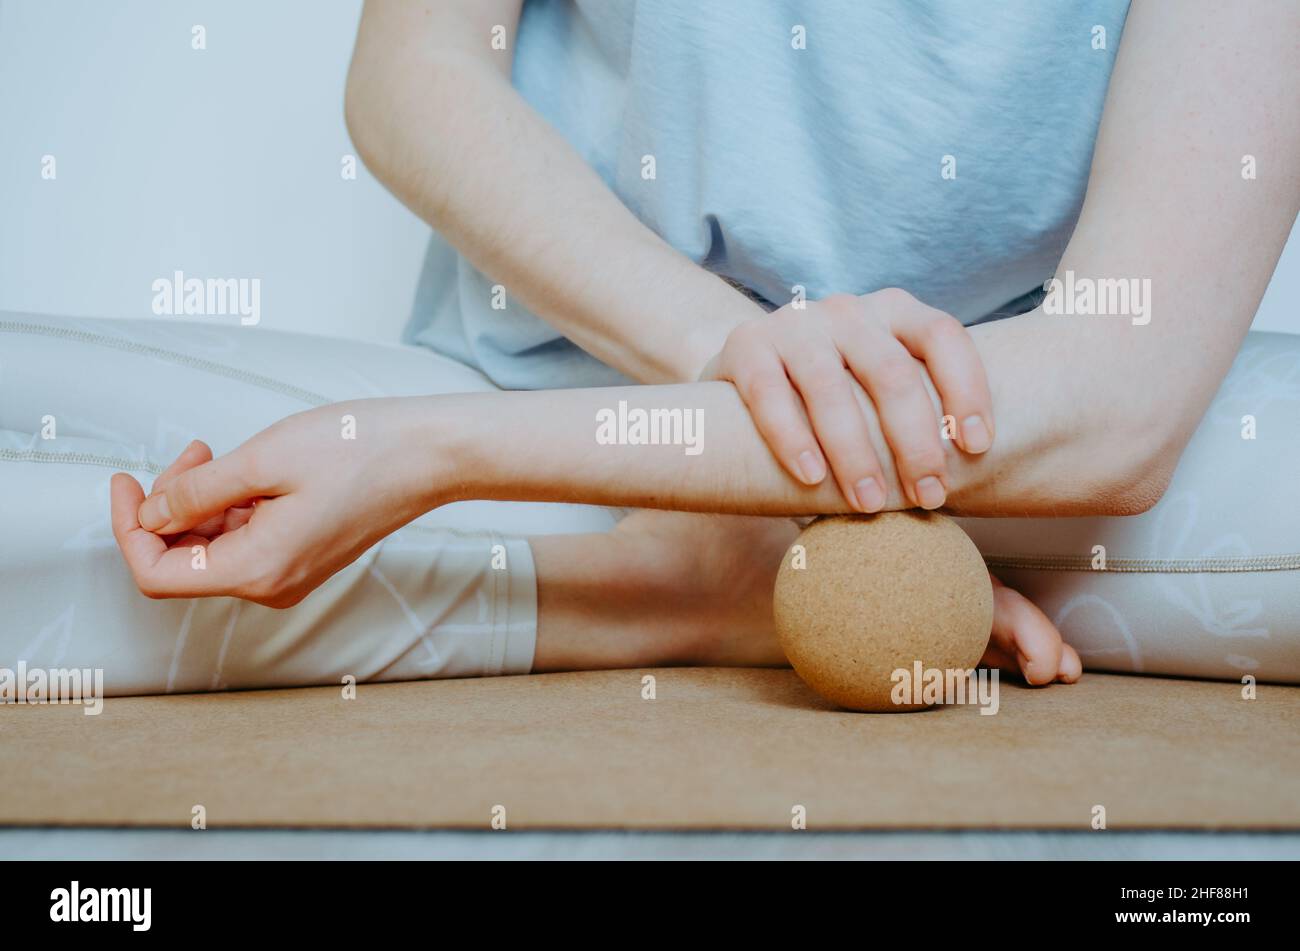 Unterarmmuskulatur myofasziale Freisetzung mit großer Kork-Massagekugel auf Kork-Yoga-Matte. Konzept: Selbstpflege zu Hause, nachhaltige Requisiten Stockfoto